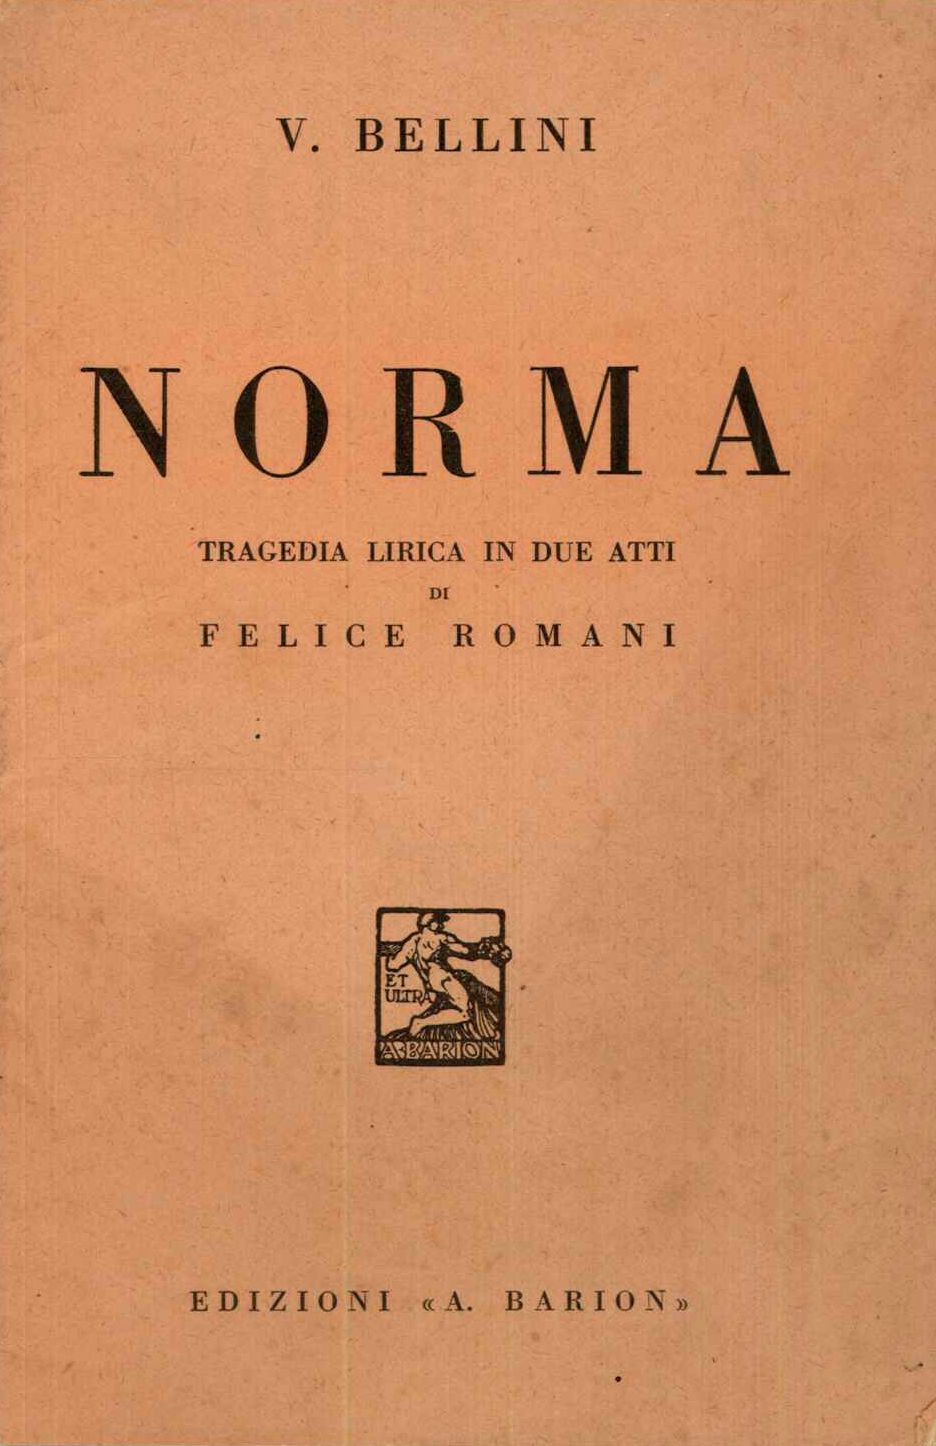 Norma. tragedia lirica in due atti di Felice Romani